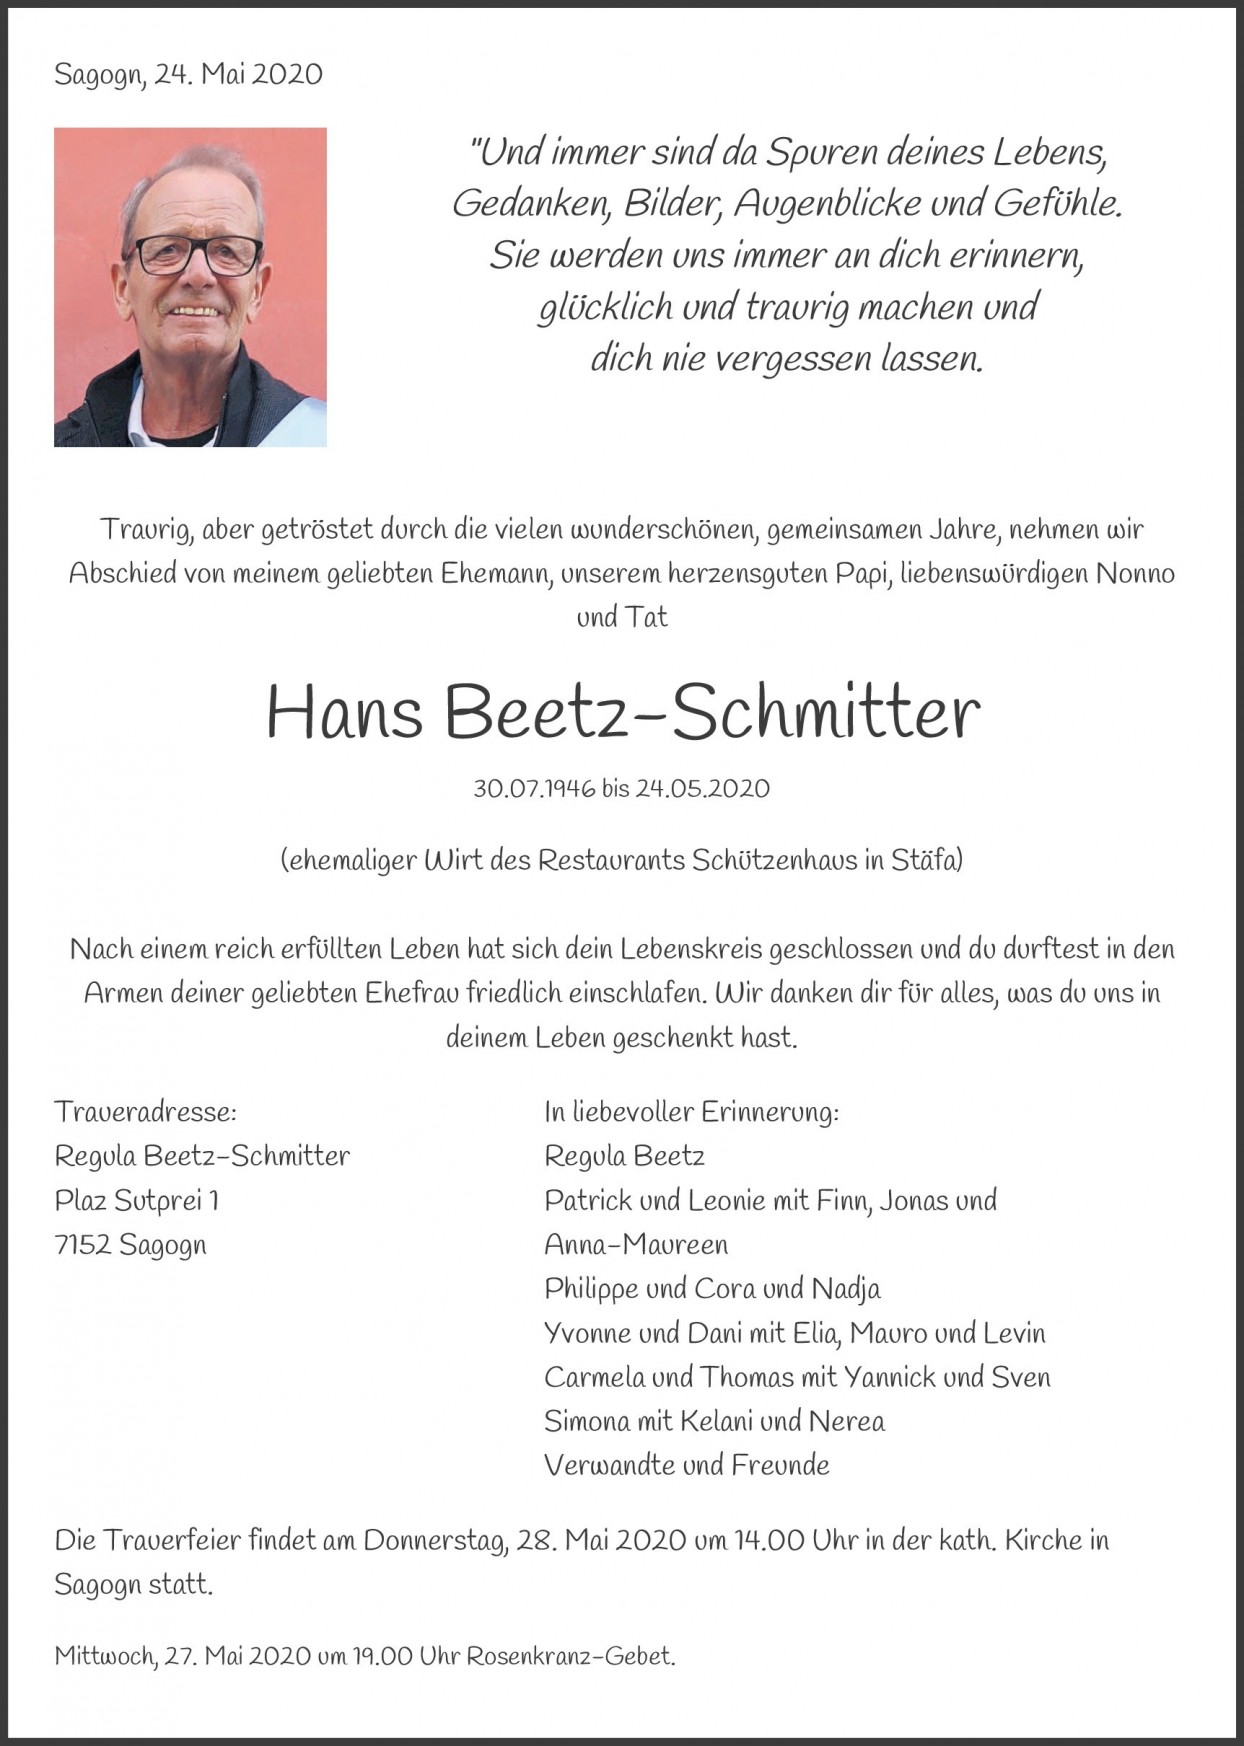 Hans Beetz-Schmitter